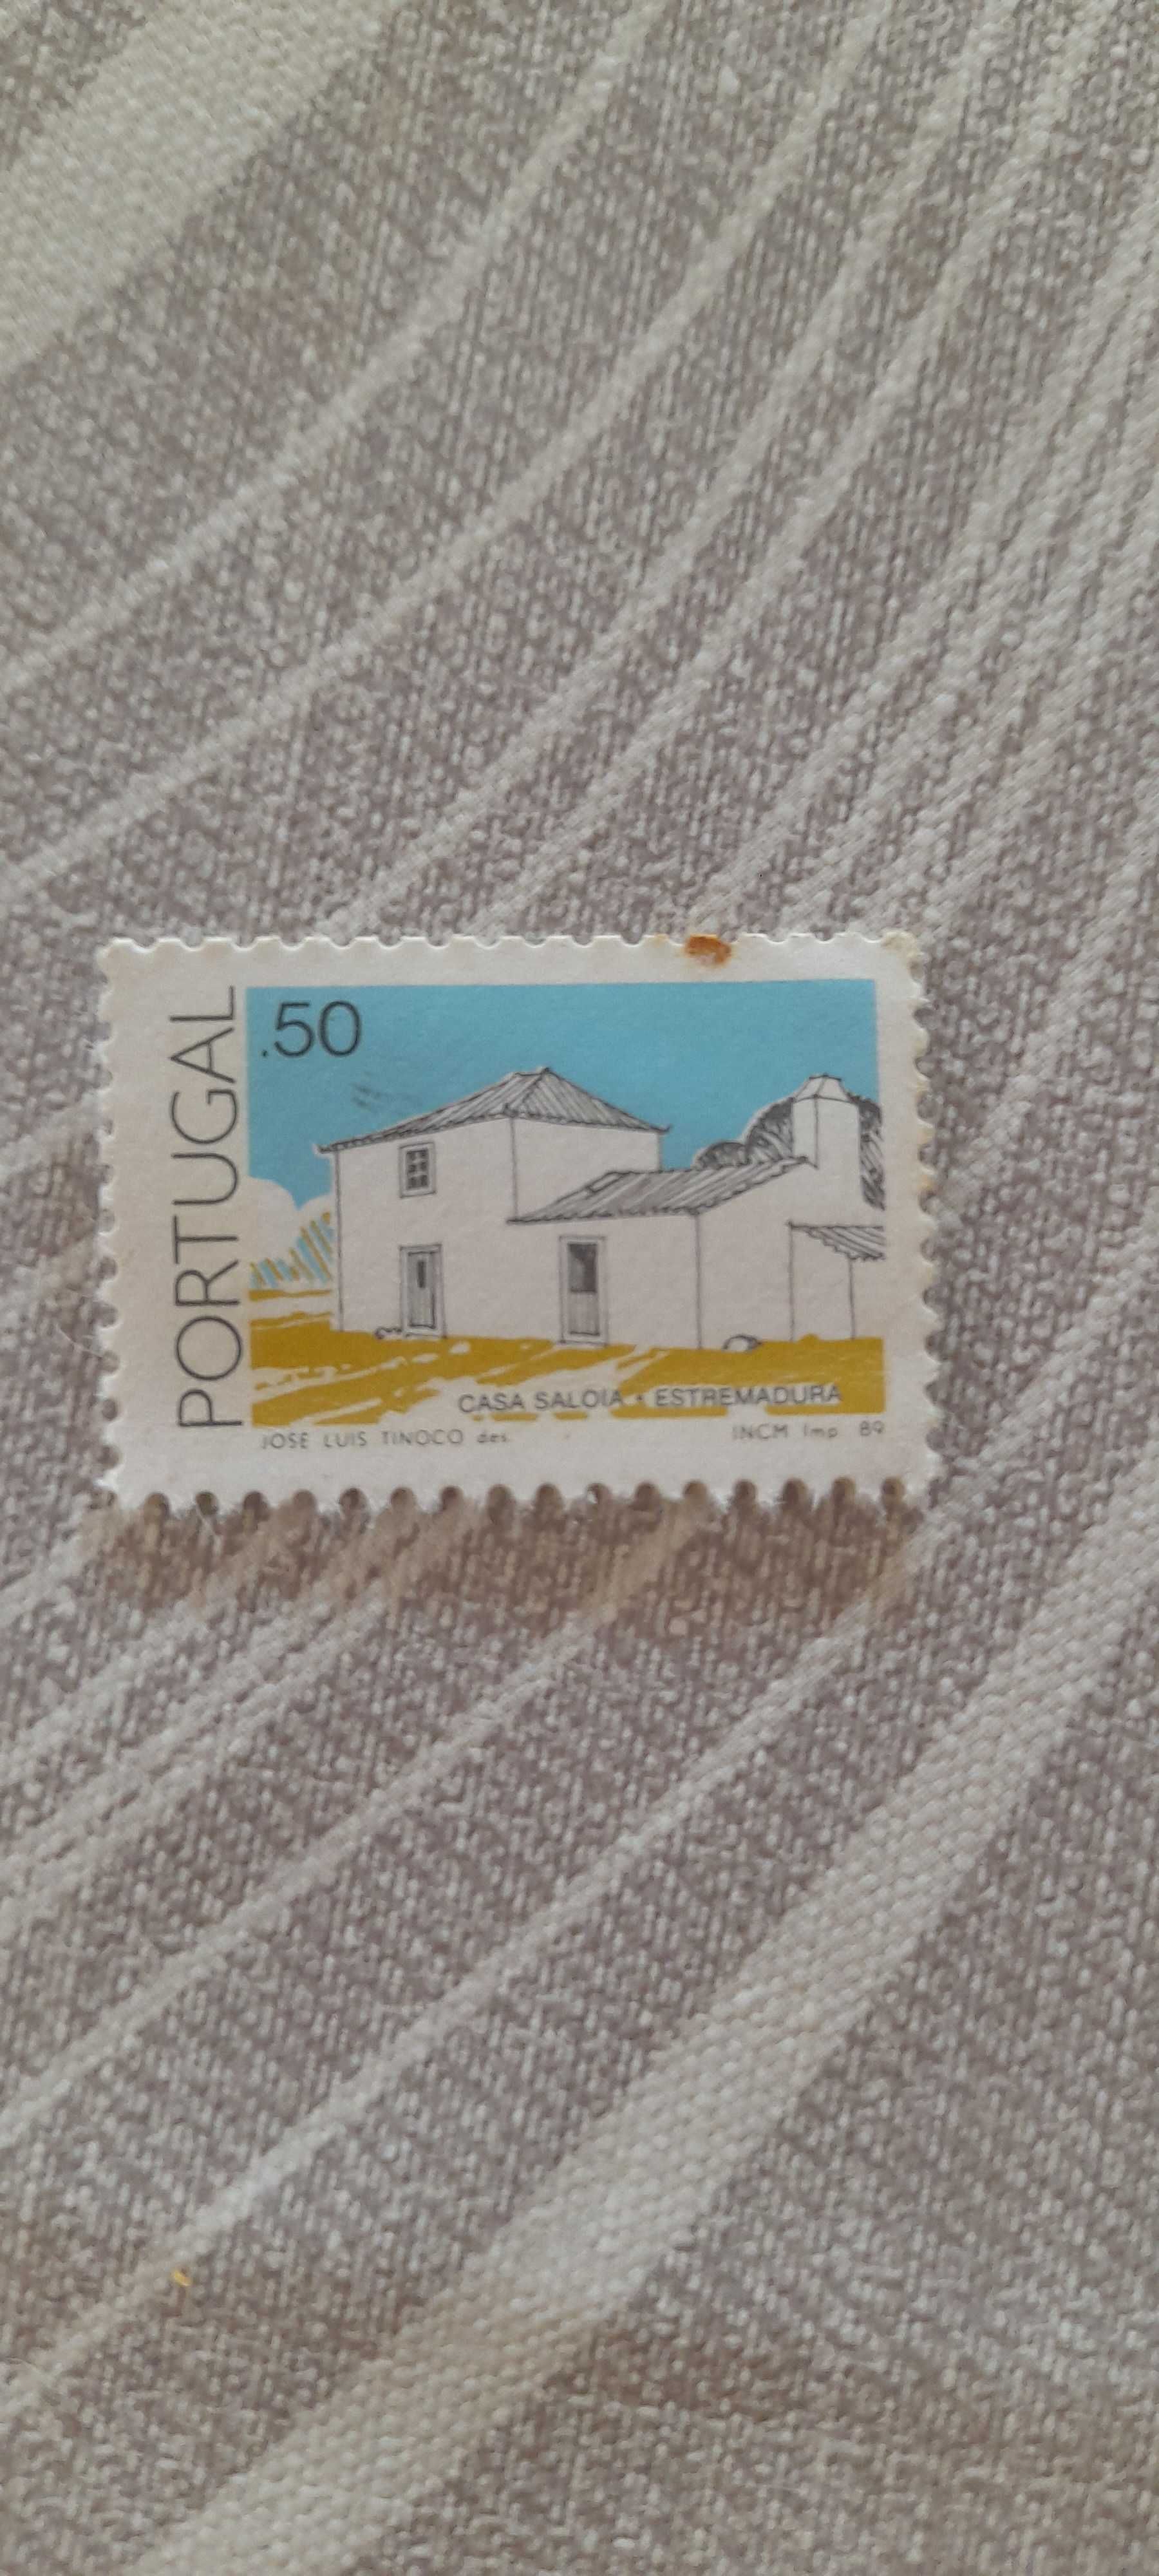 Antiguidades, selos de coleção